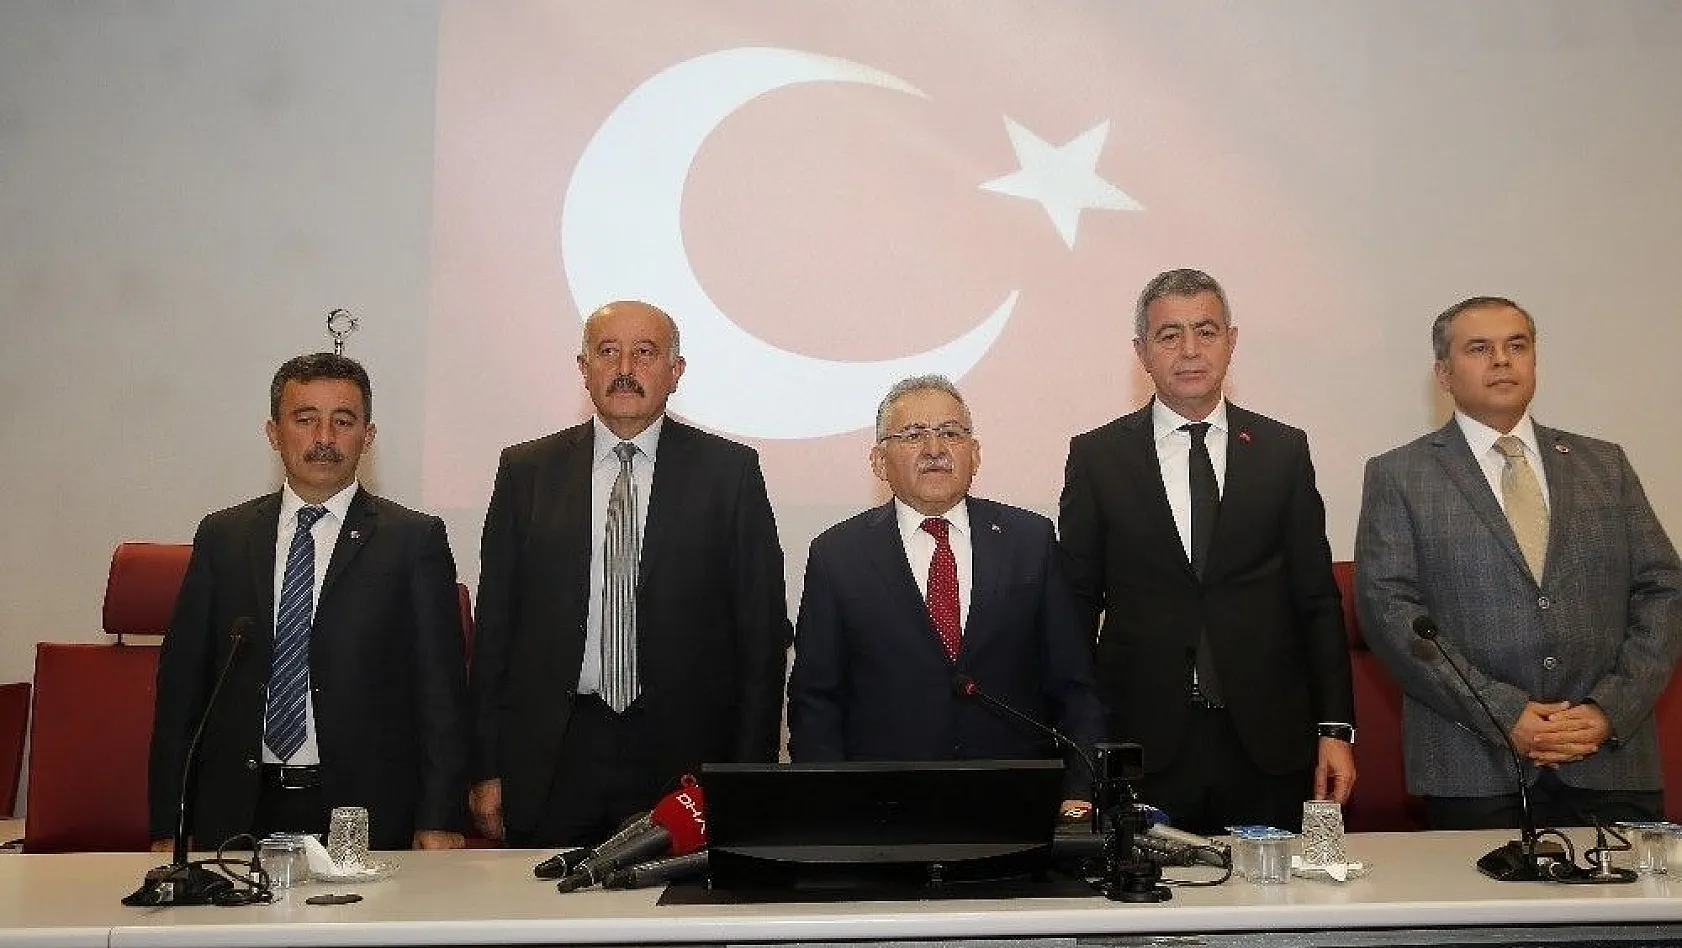 Kayseri Büyükşehir Belediyesi'nden ortak İdlib bildirisi
